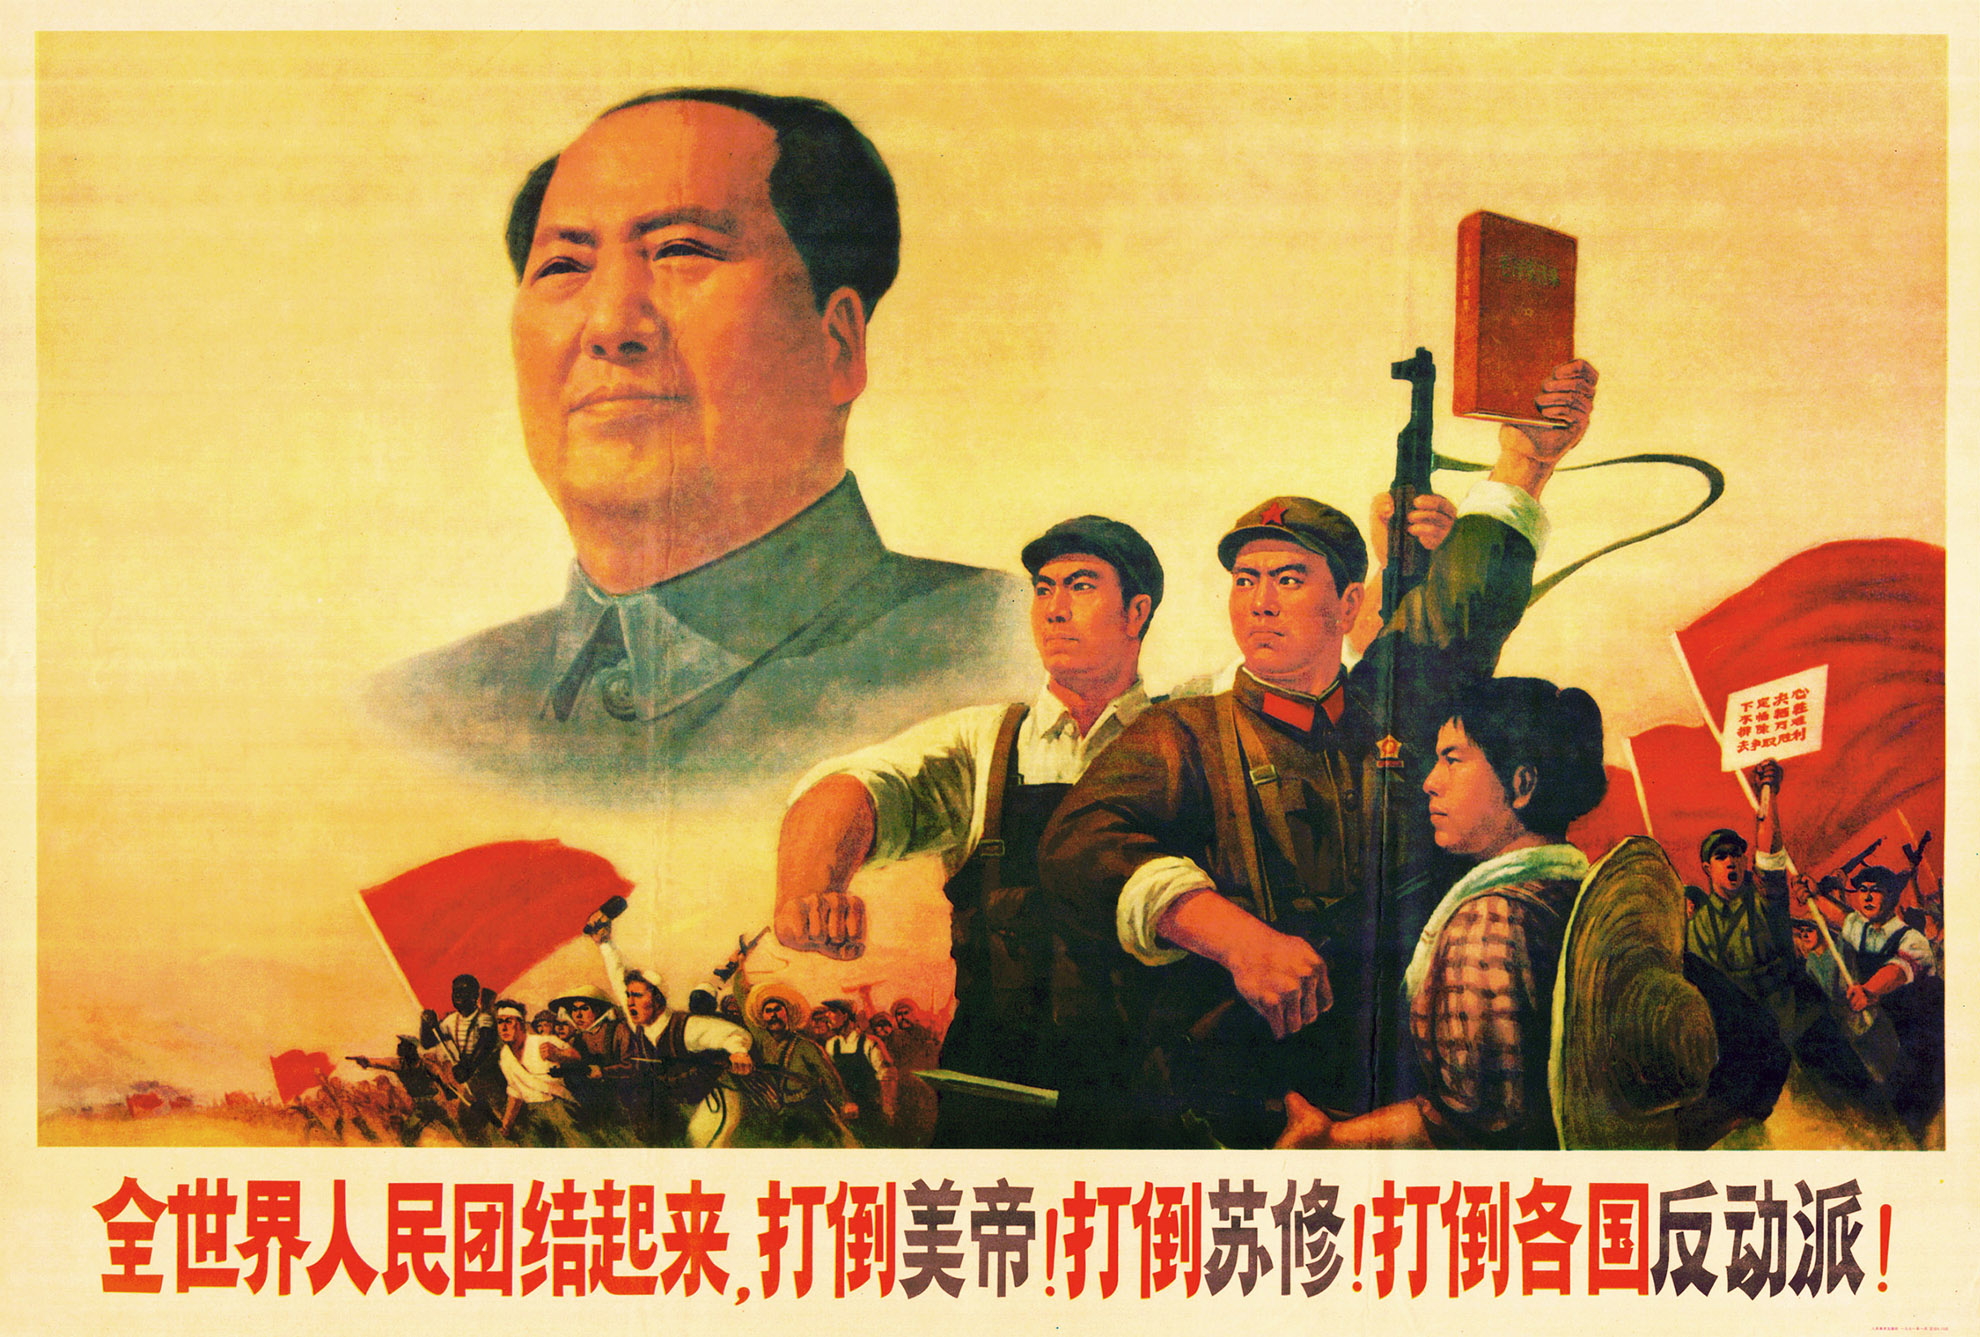 10 ЗАКОНІВ ТИРАНІЇ: Мао Цзедун із Китая